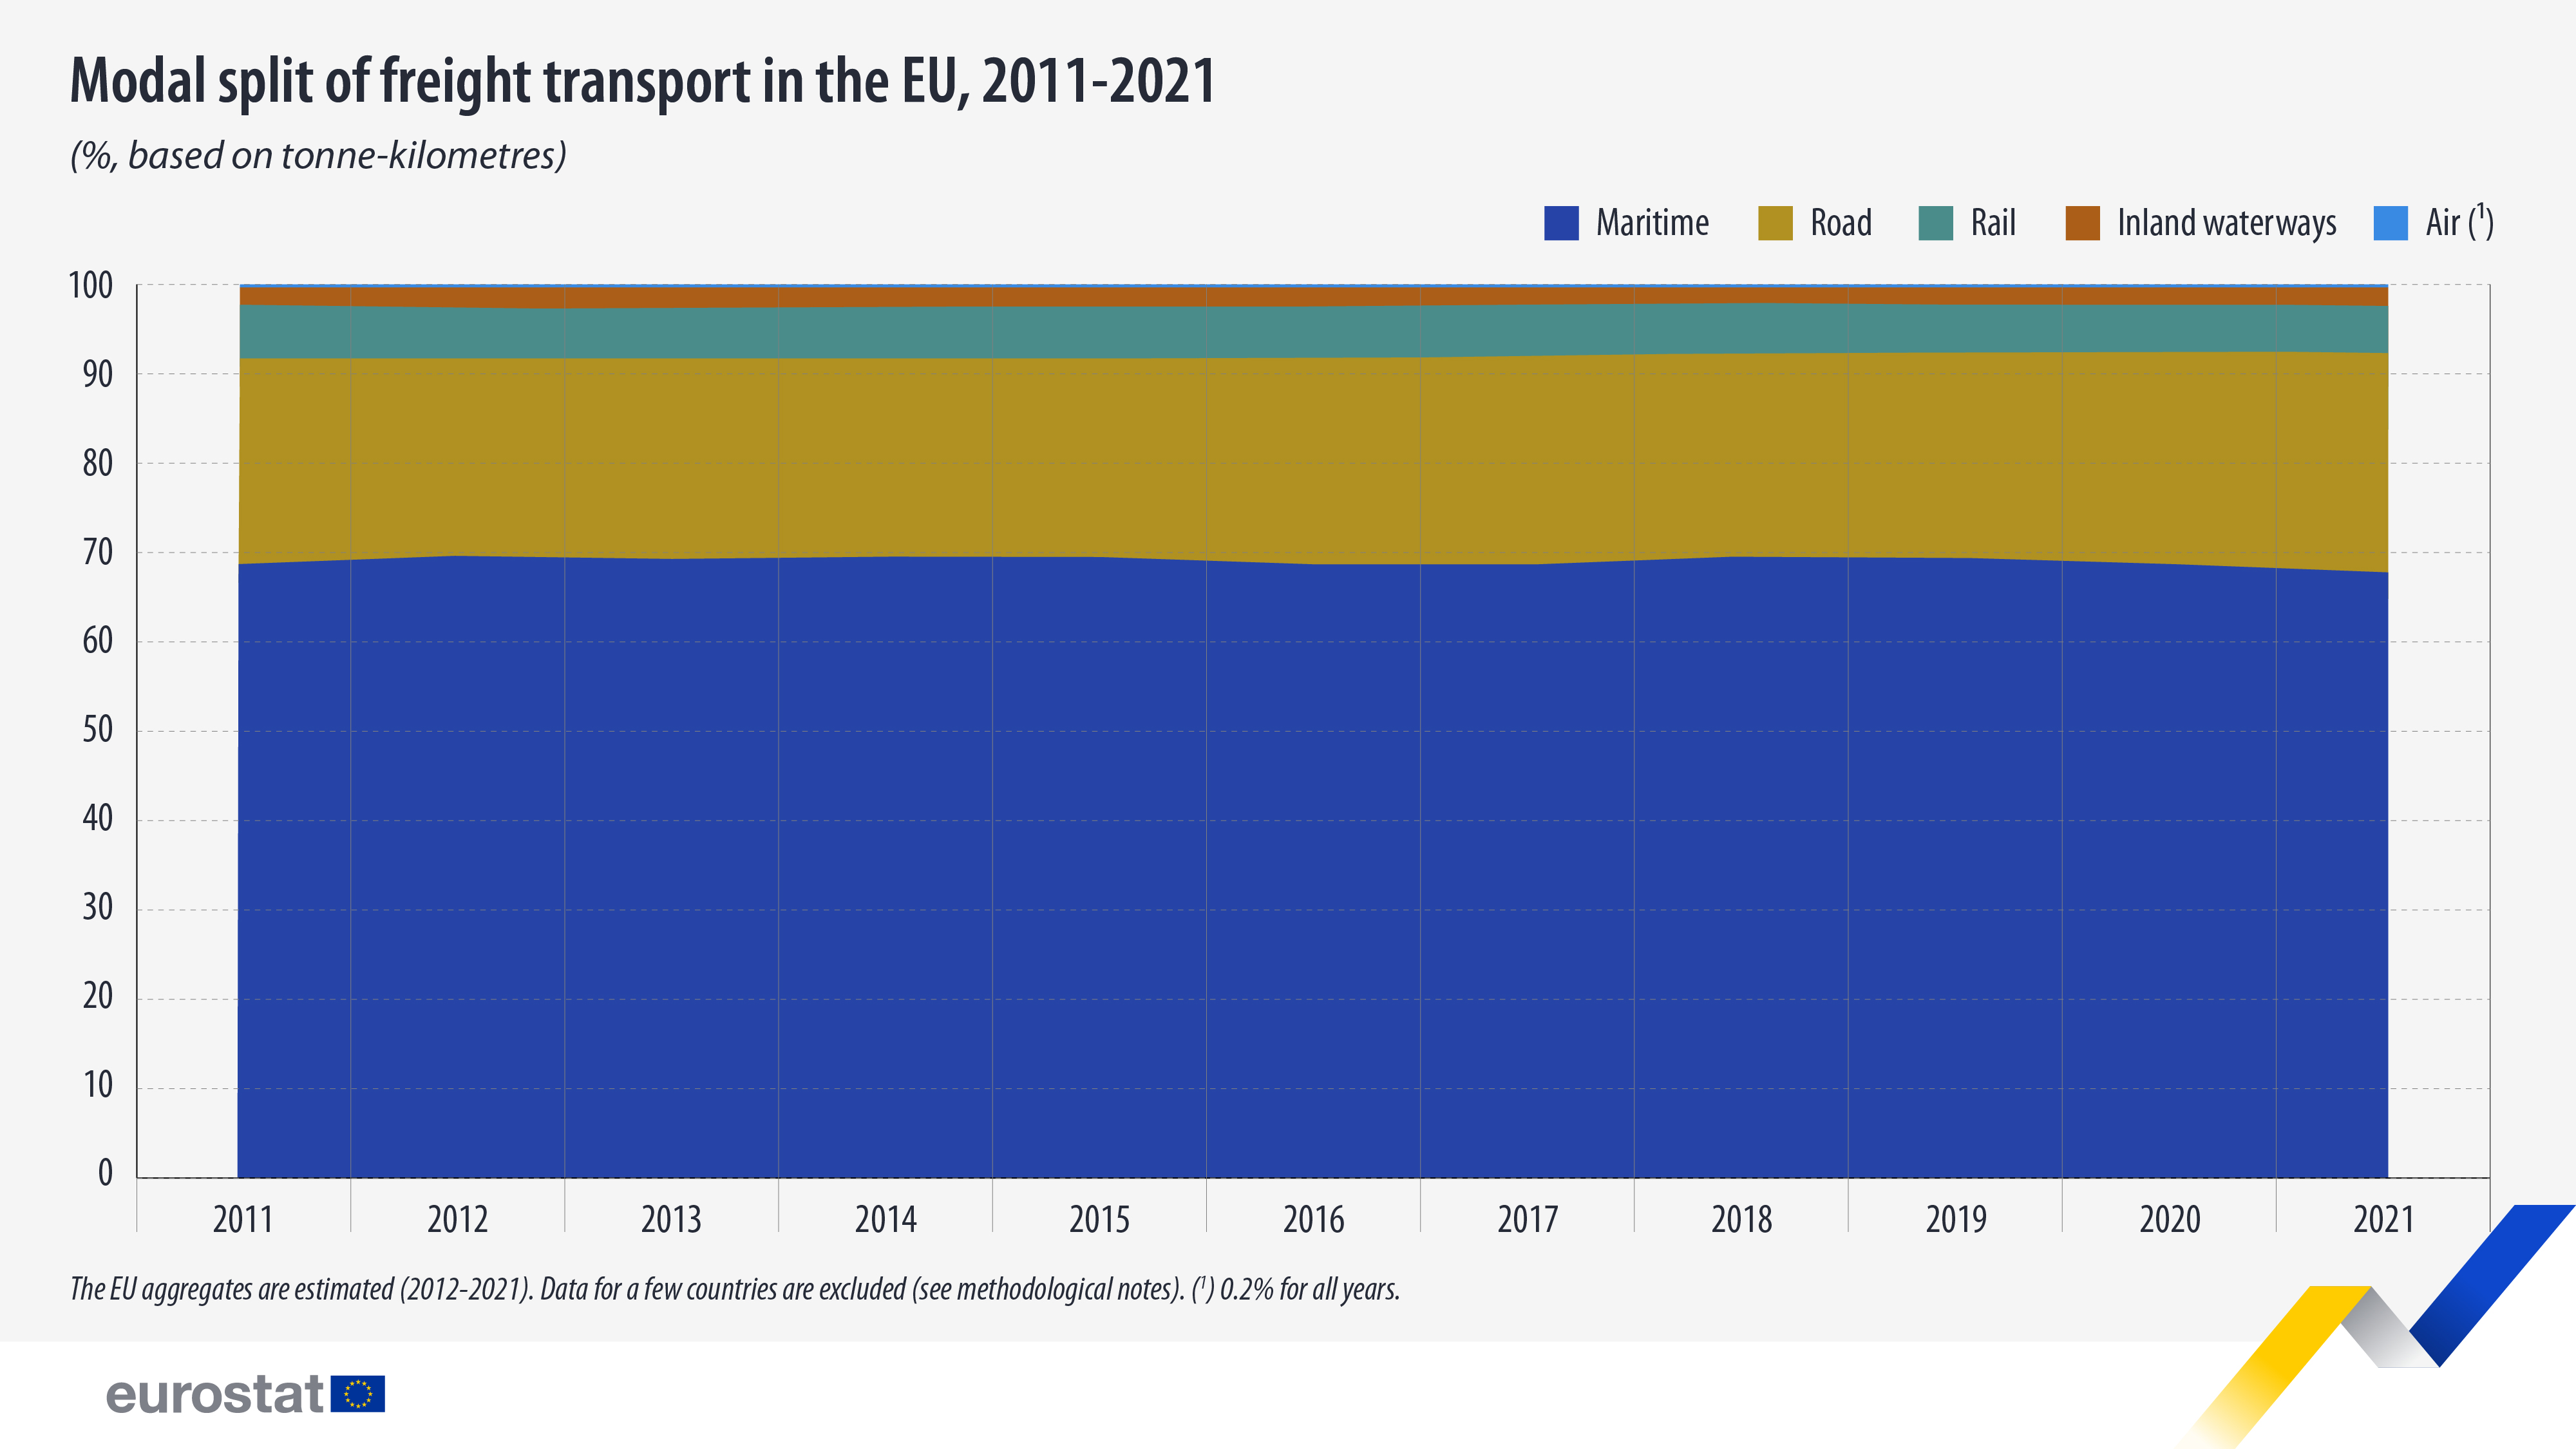 Γράφημα στοιβαγμένης περιοχής: Καταμερισμός των εμπορευματικών μεταφορών στην ΕΕ, 2011-2021, σε %, βάσει τονοχιλιομέτρων